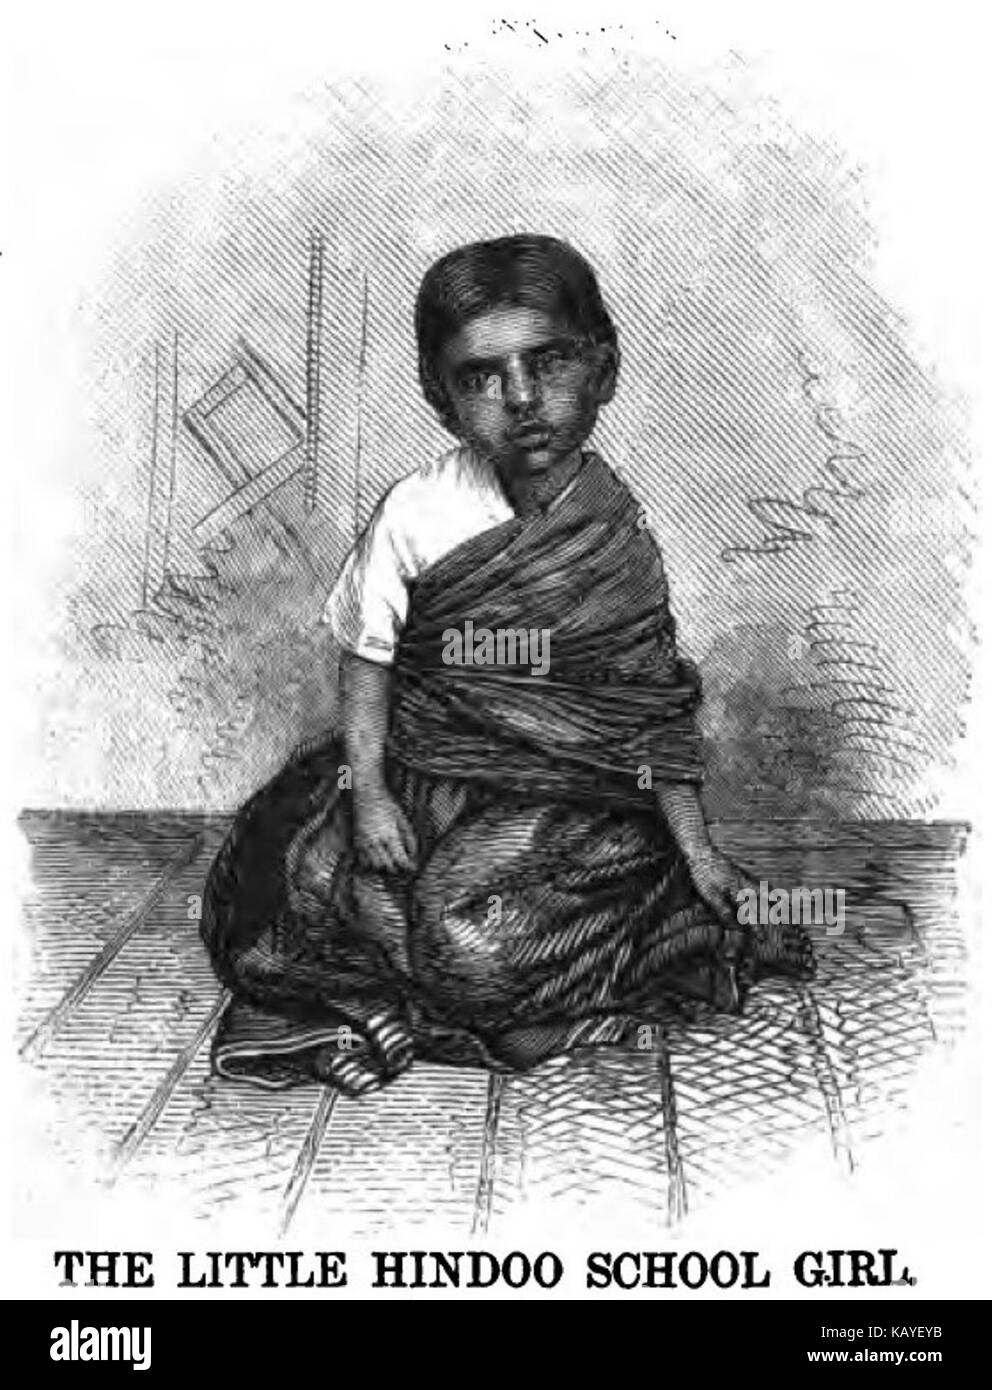 La pequeña niña de la escuela Hindoo (p.81, de junio de 1866, Sarah Sanderson 22 de marzo de 1866, el Leeds) Copia Foto de stock